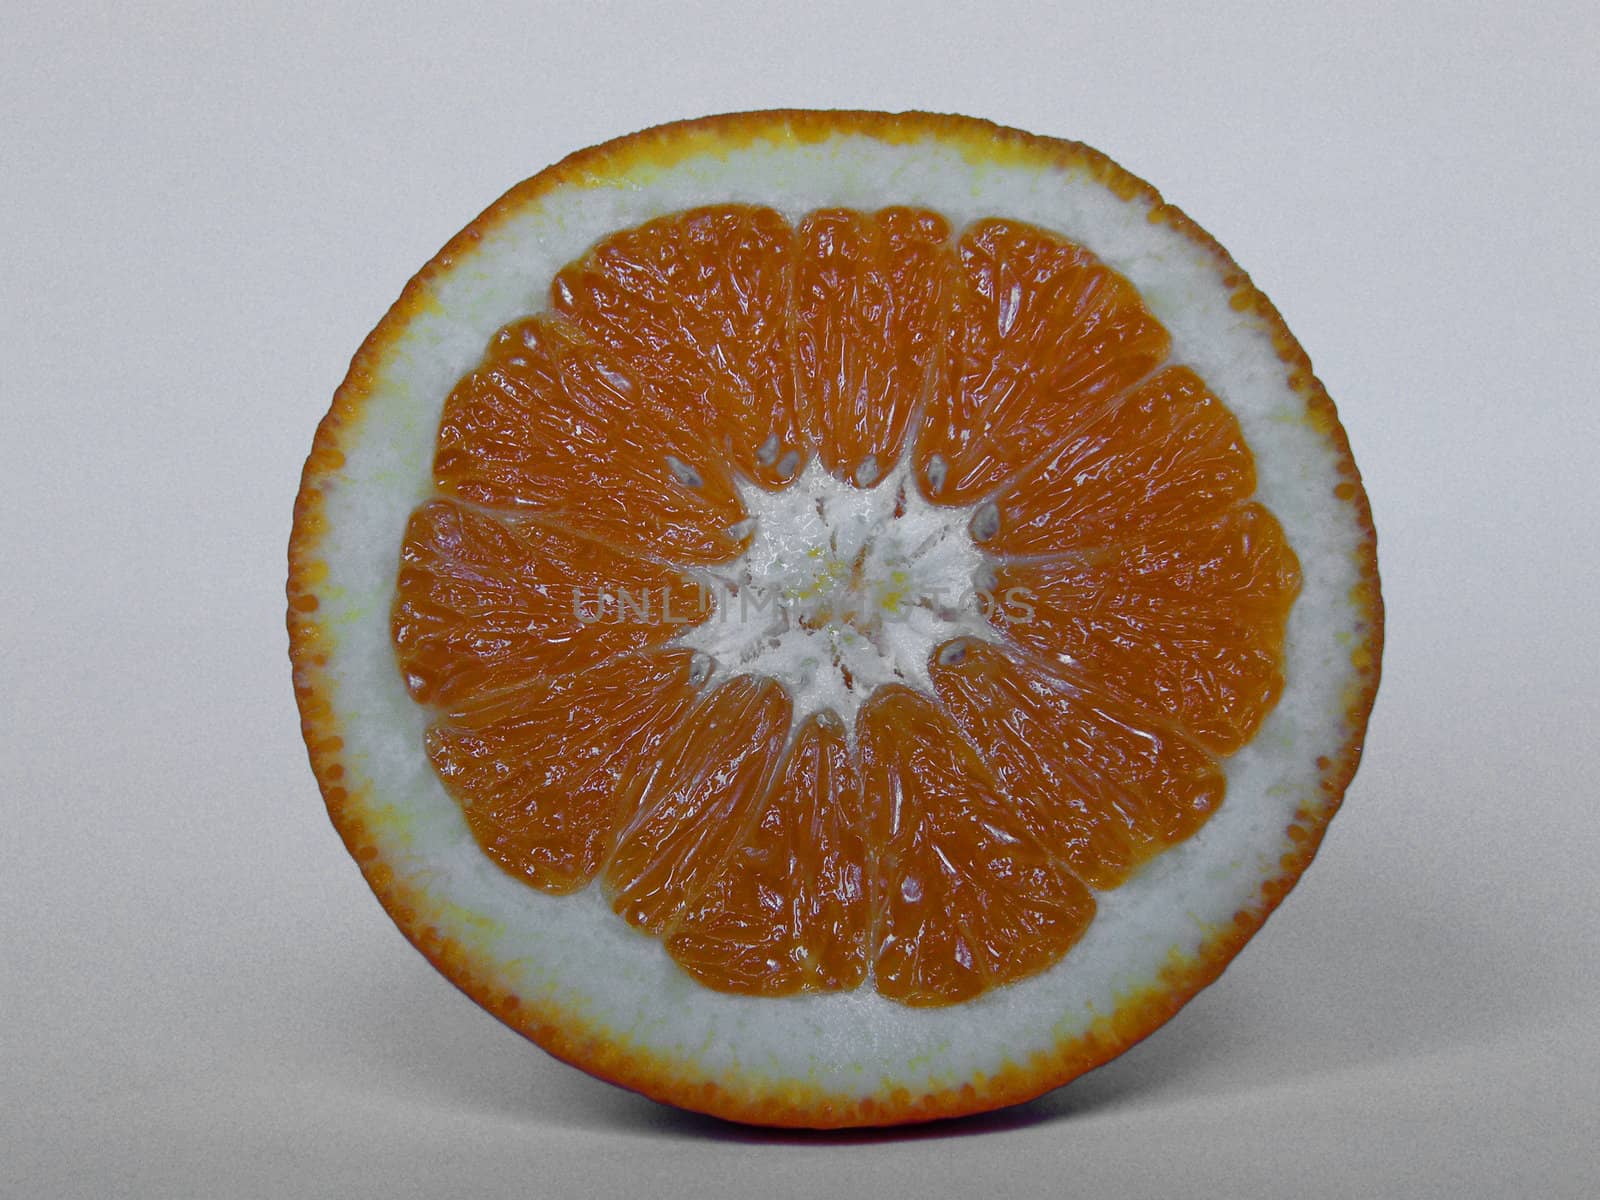 An orange on white table ready to eat